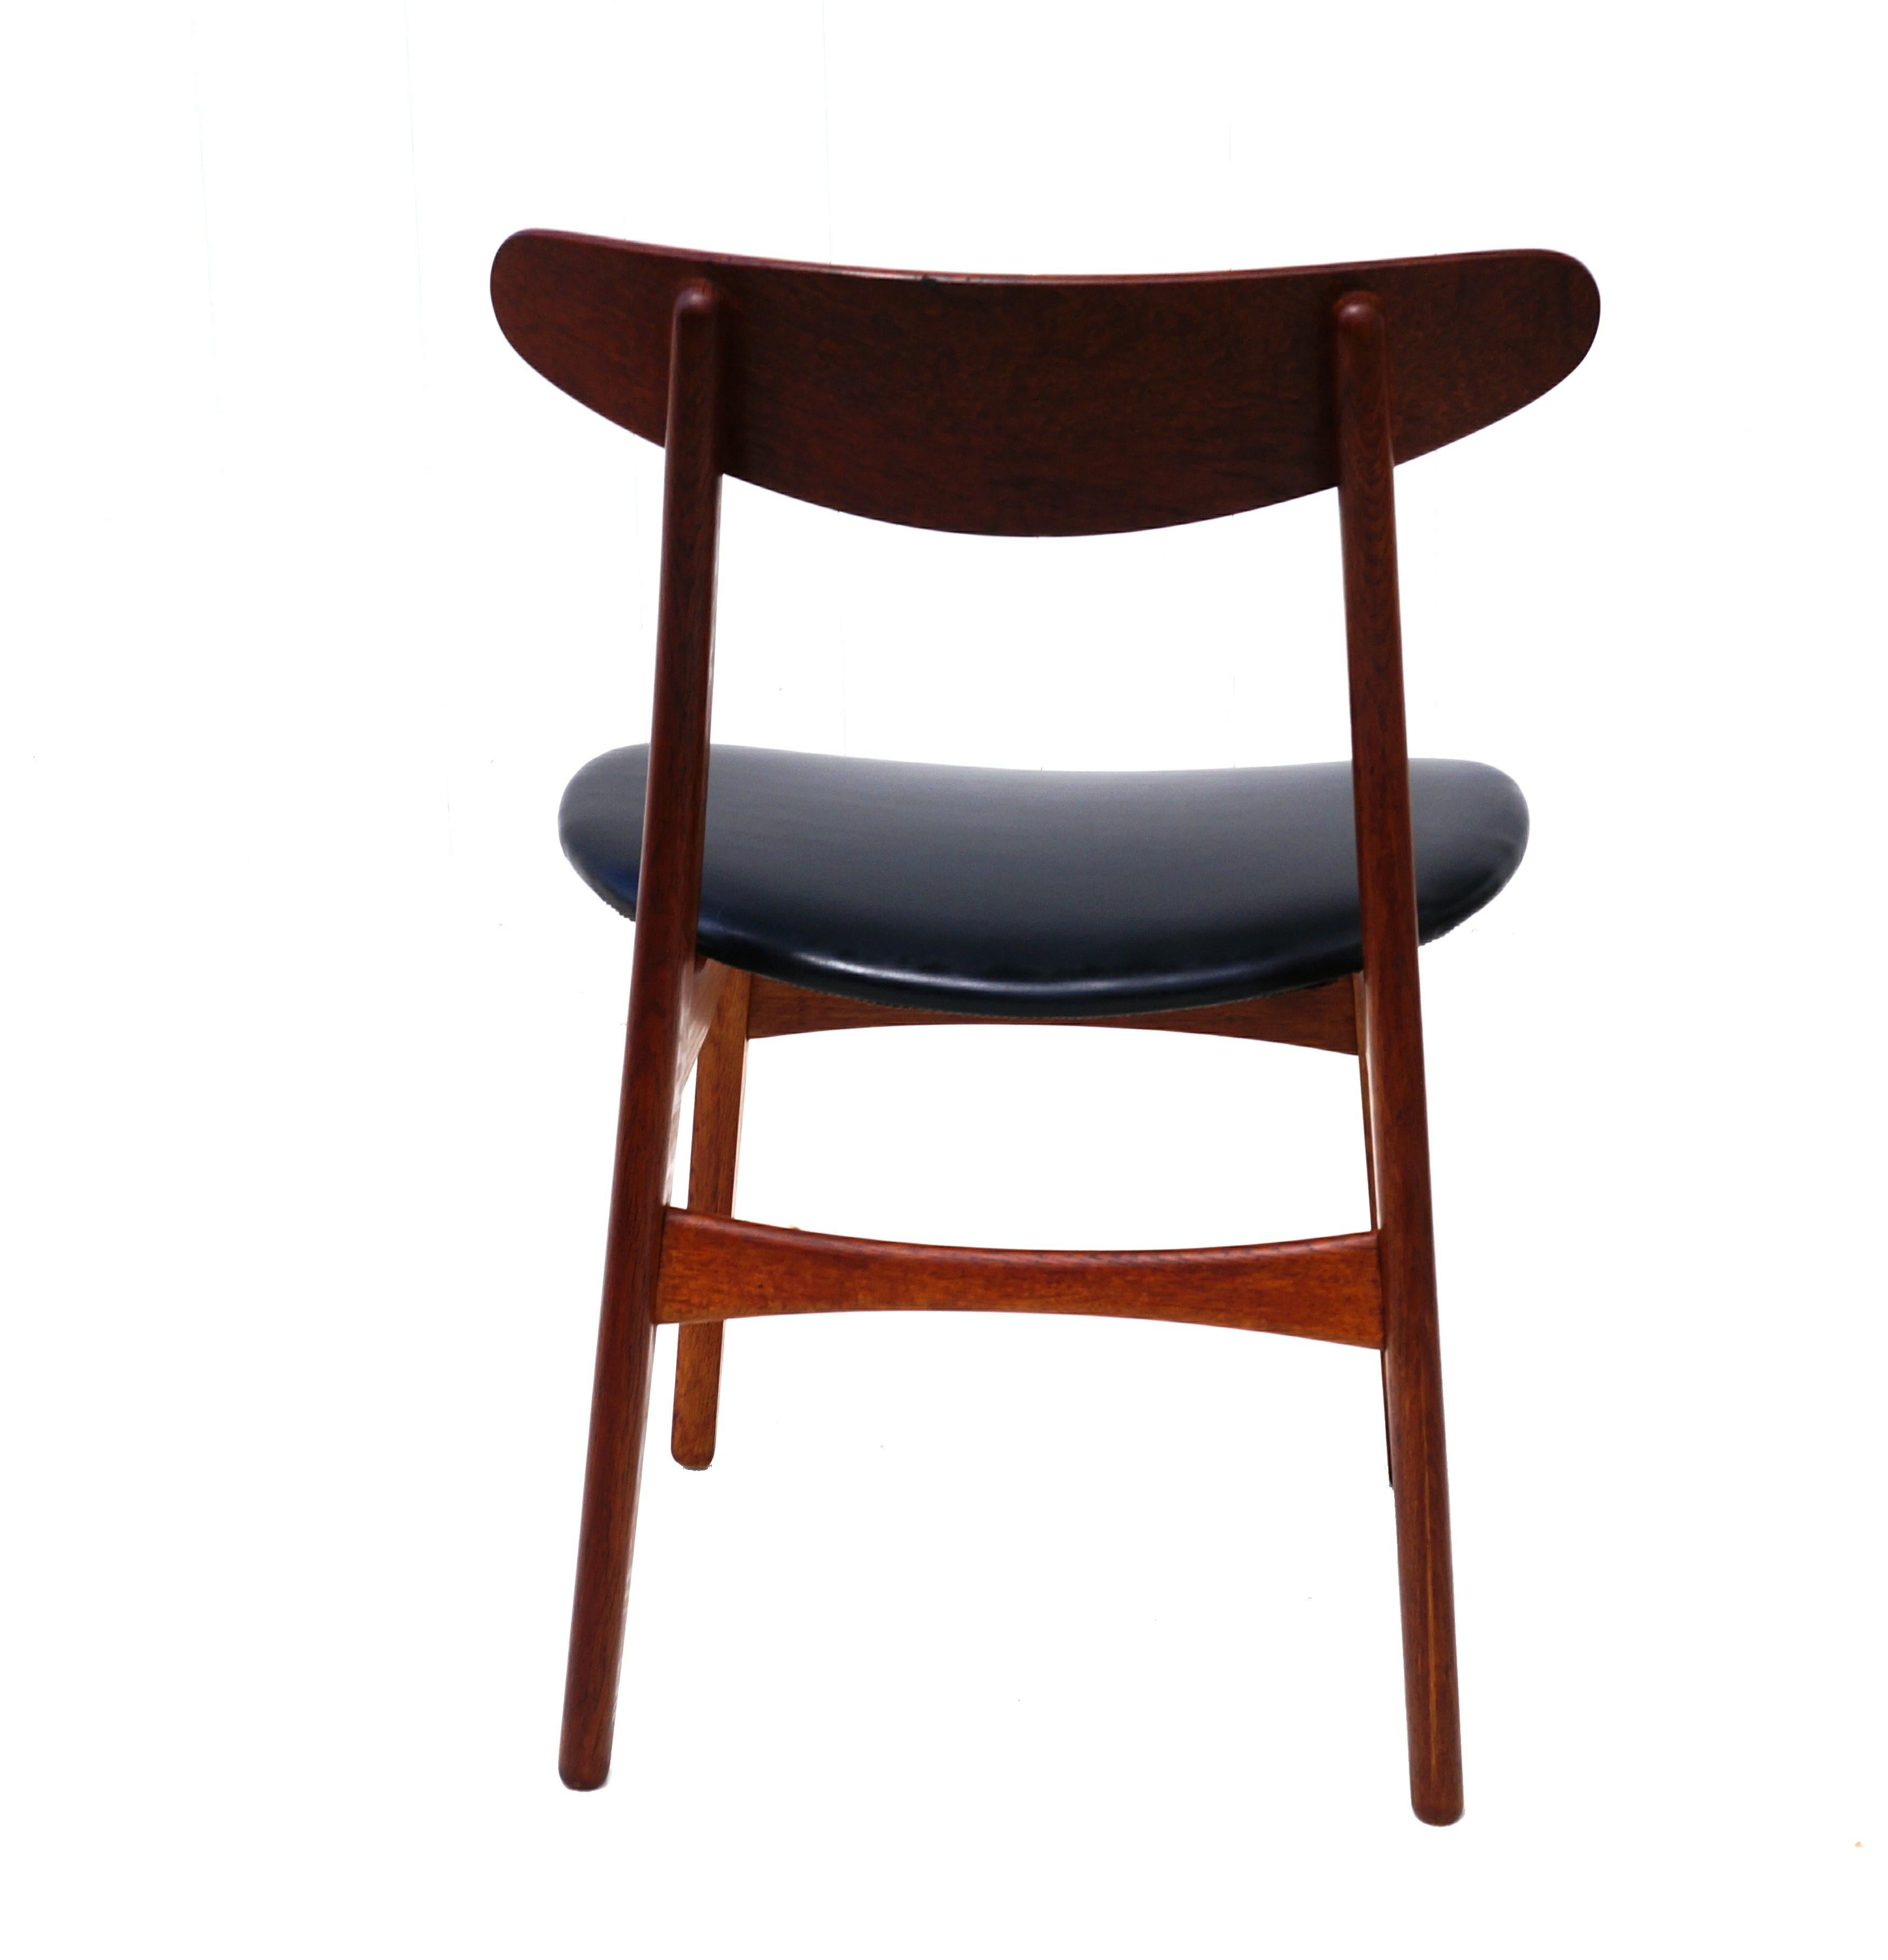 Mid-20th Century Set of 6 Hans J. Wegner Dining Chairs Model CH30 for Carl Hansen & Son